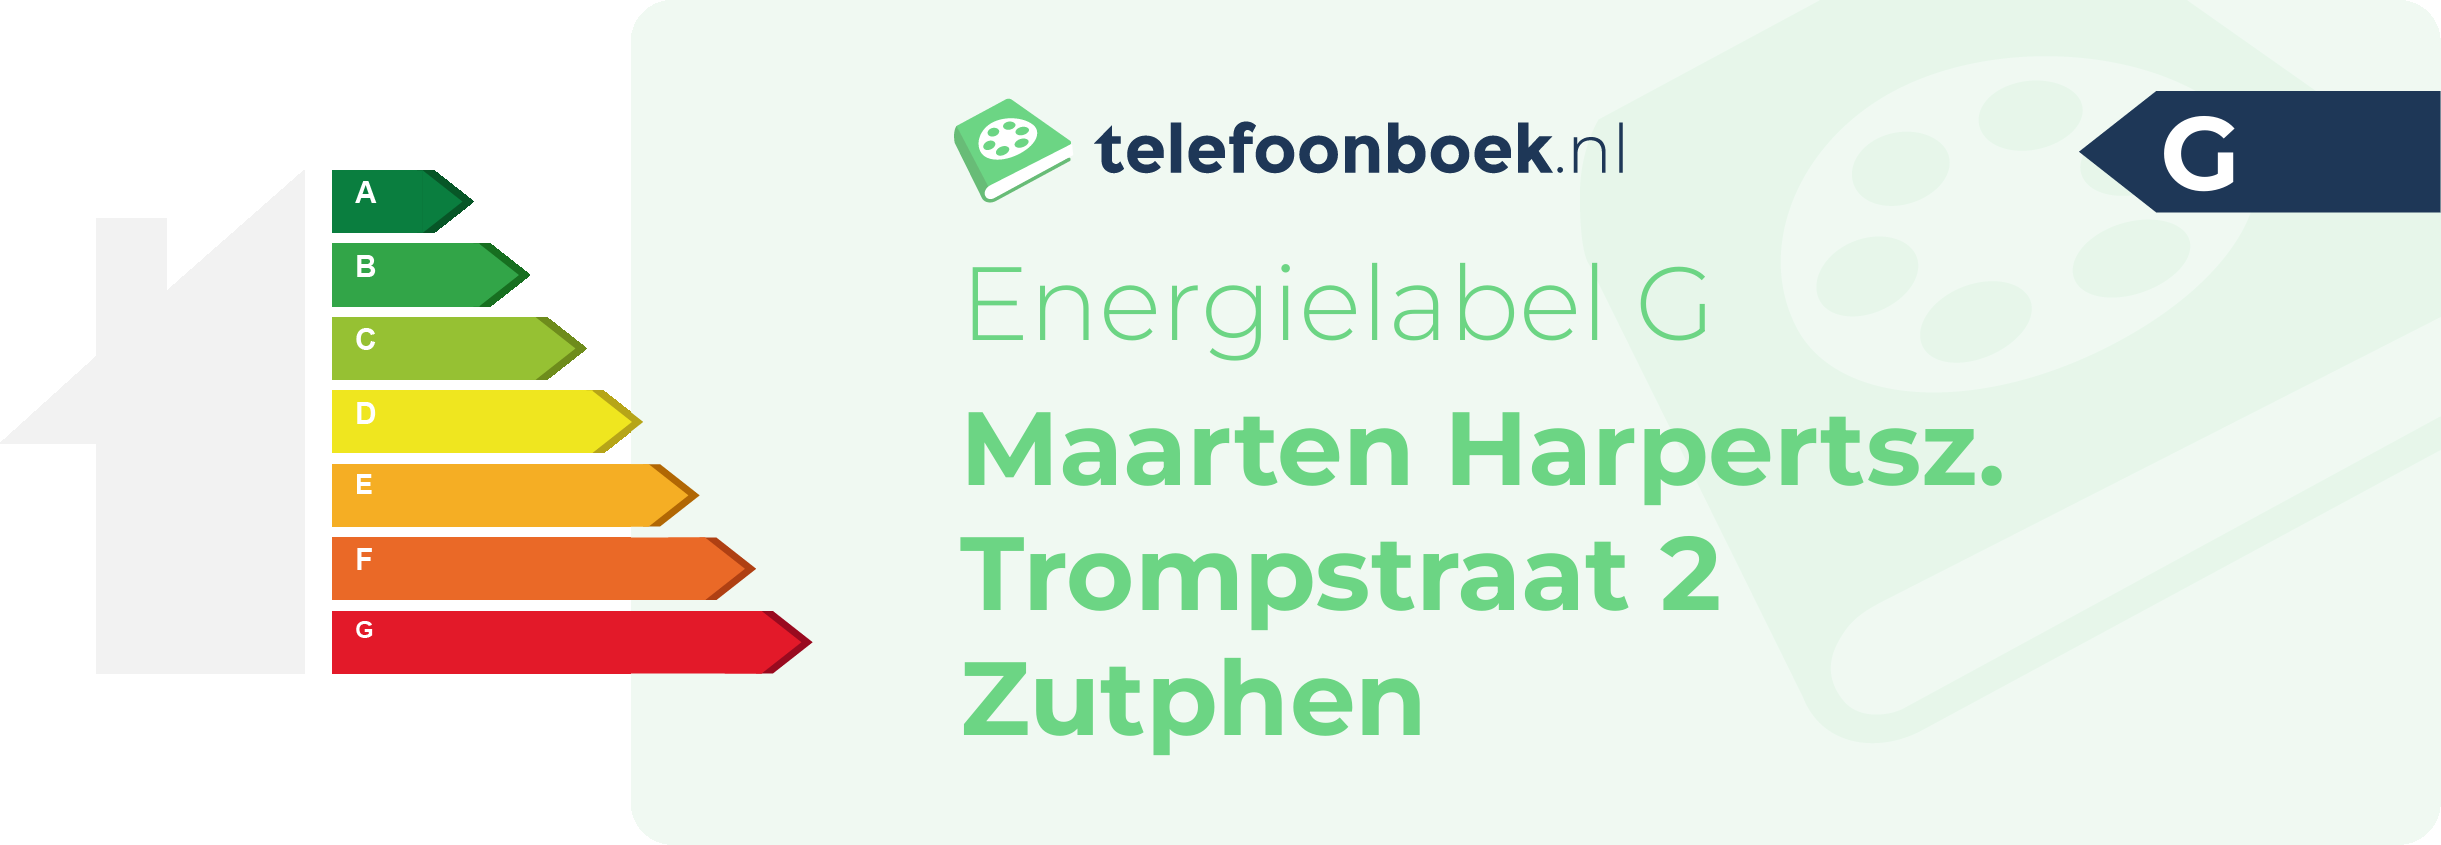 Energielabel Maarten Harpertsz. Trompstraat 2 Zutphen